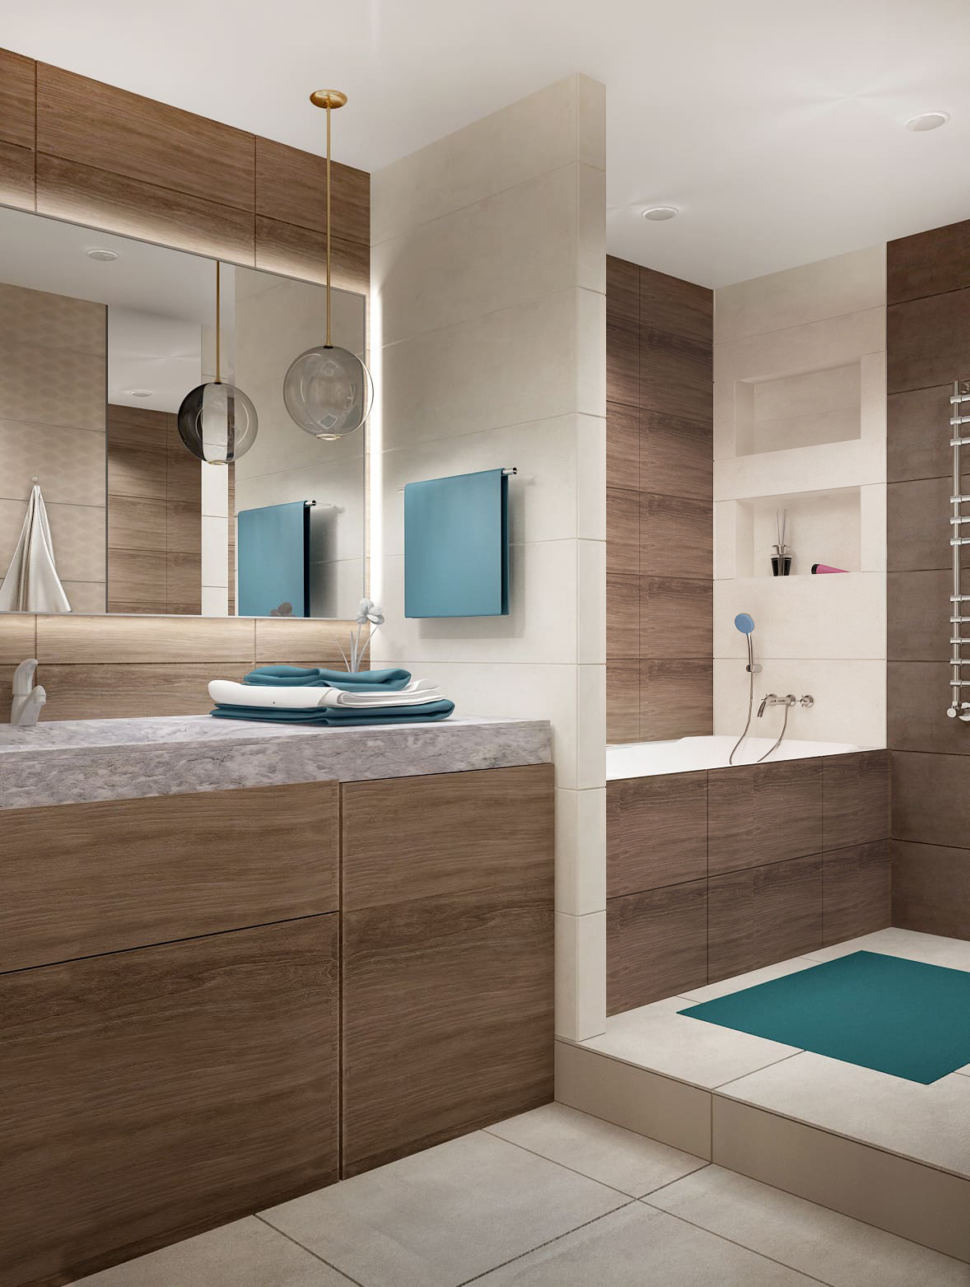 Дизайн интерьера ванной 7 кв.м в древесных тонах с шоколадными оттенками, зеркало, бежевая тумба, сушилка, раковина, душевая кабина